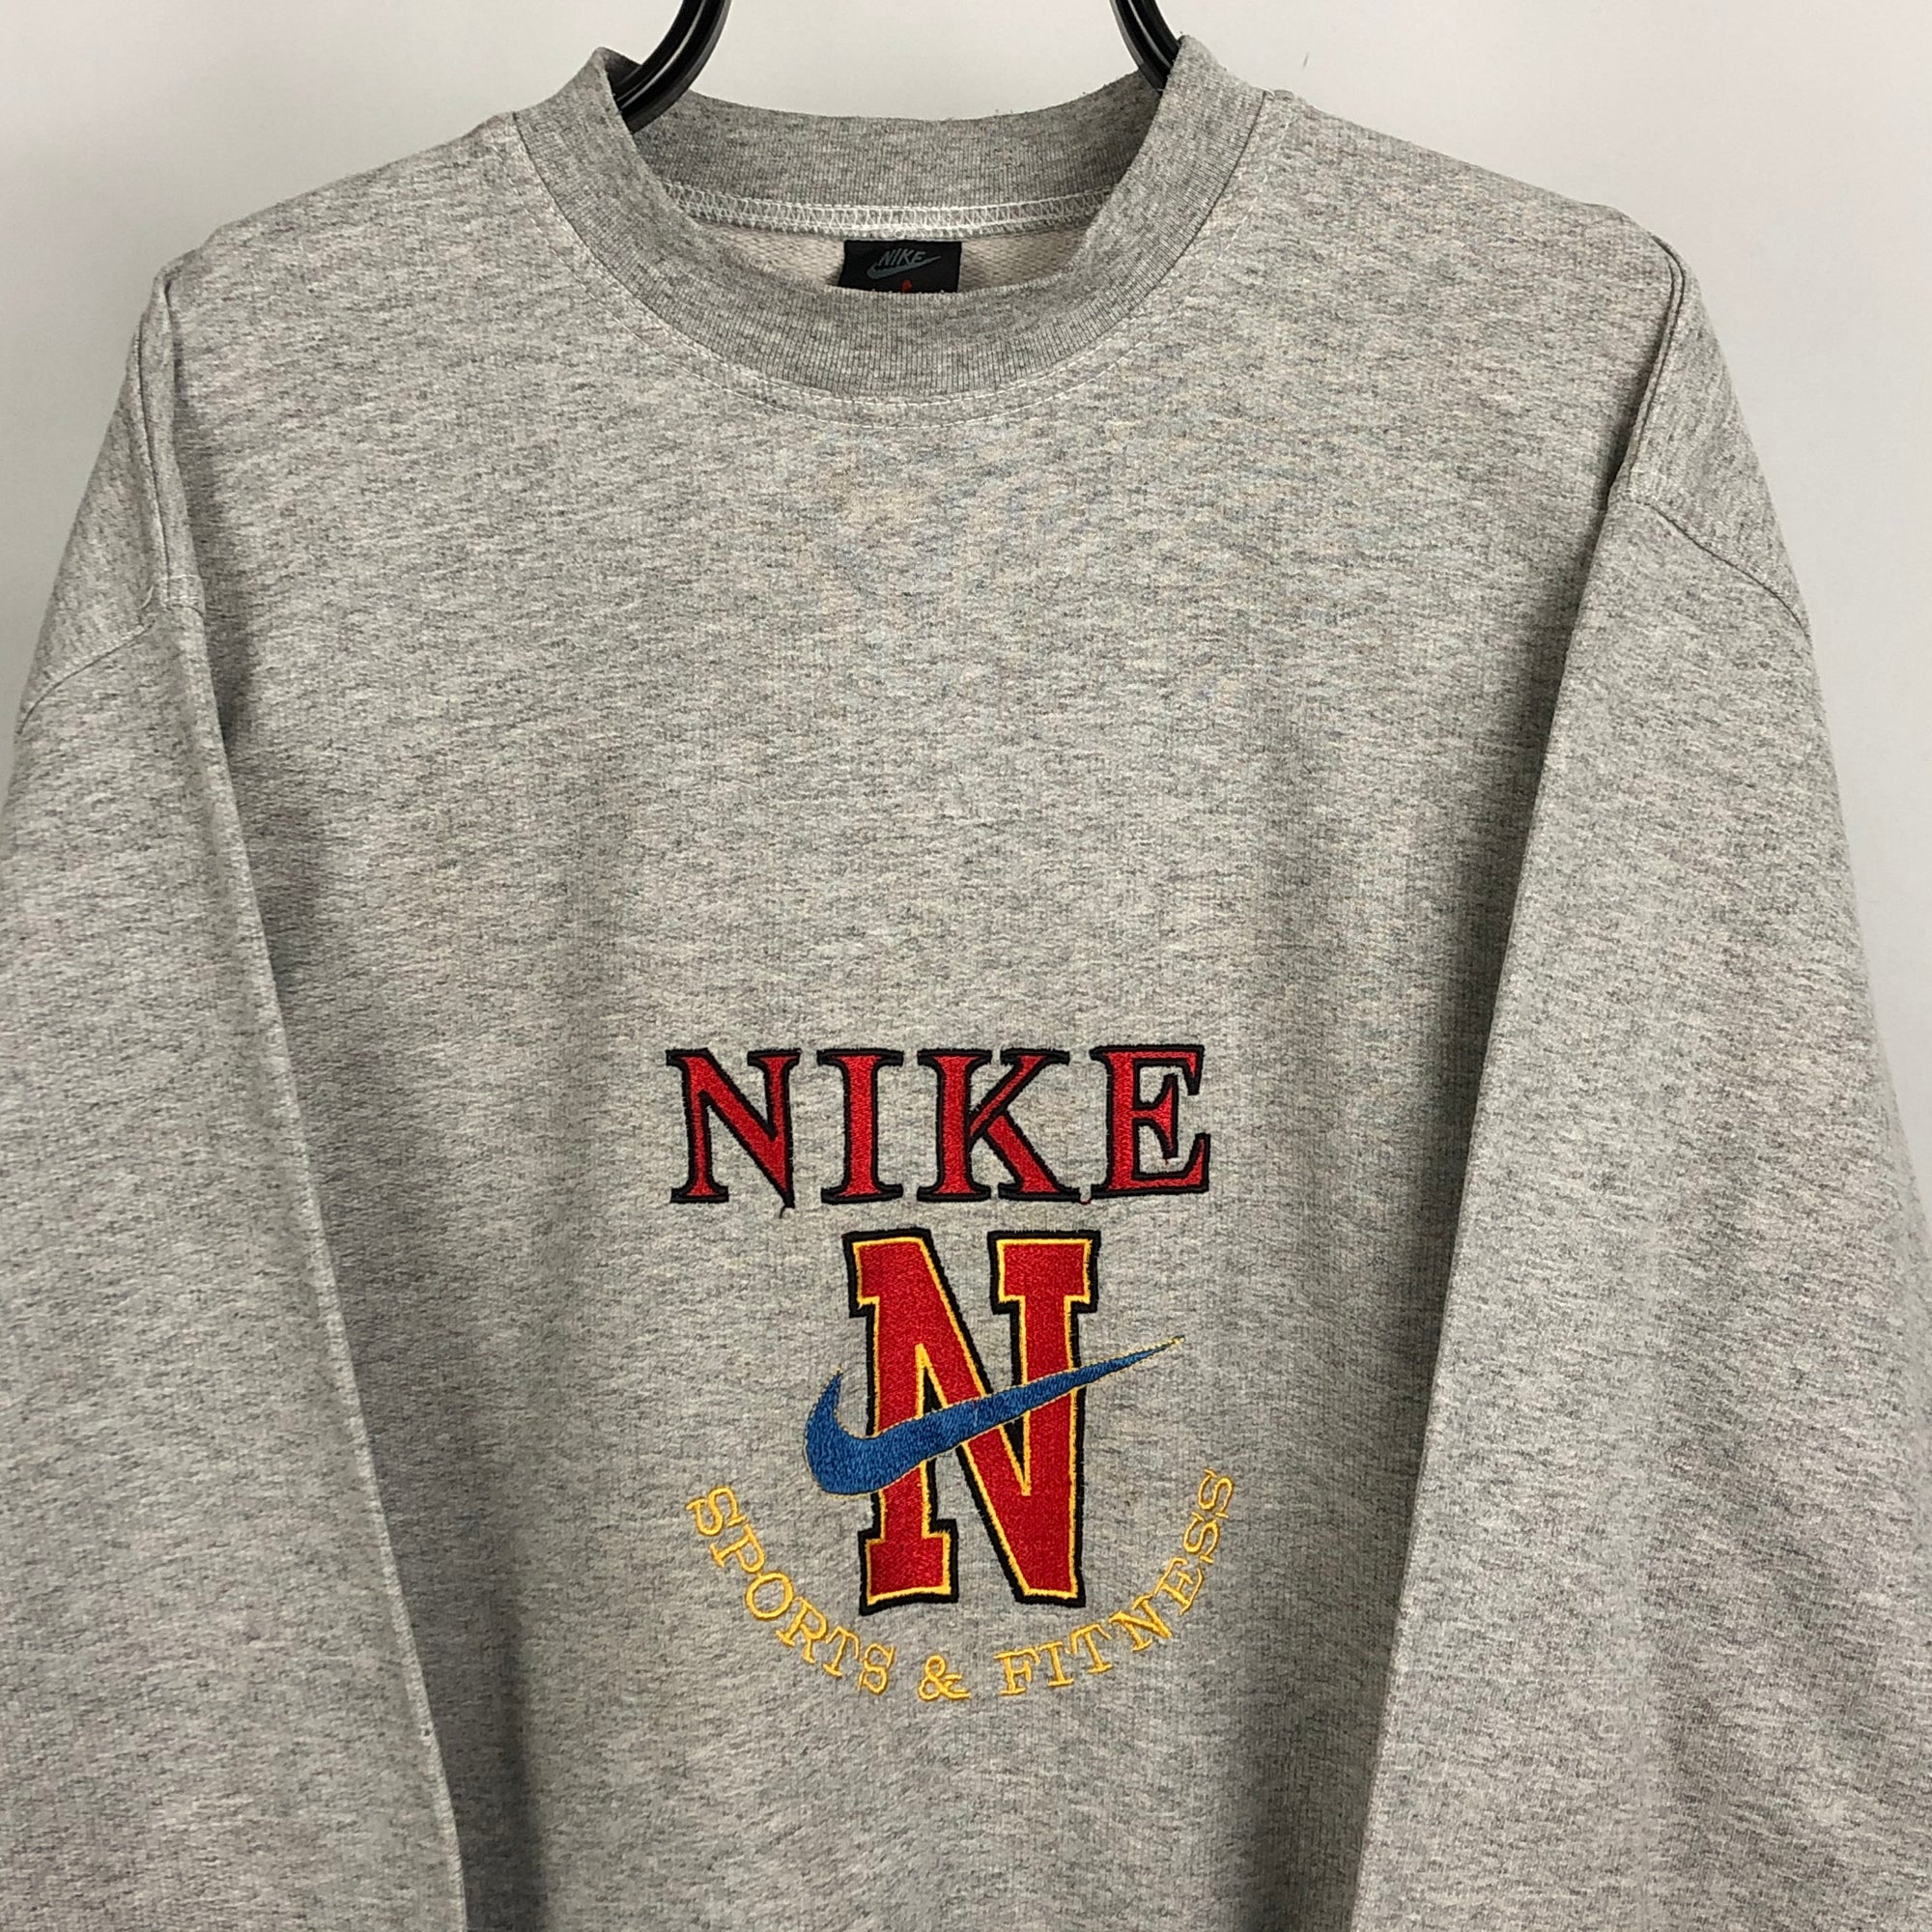 Vintage Nike Jordan Spellout Sweatshirt in Grey - Men's XL/Women's XXL